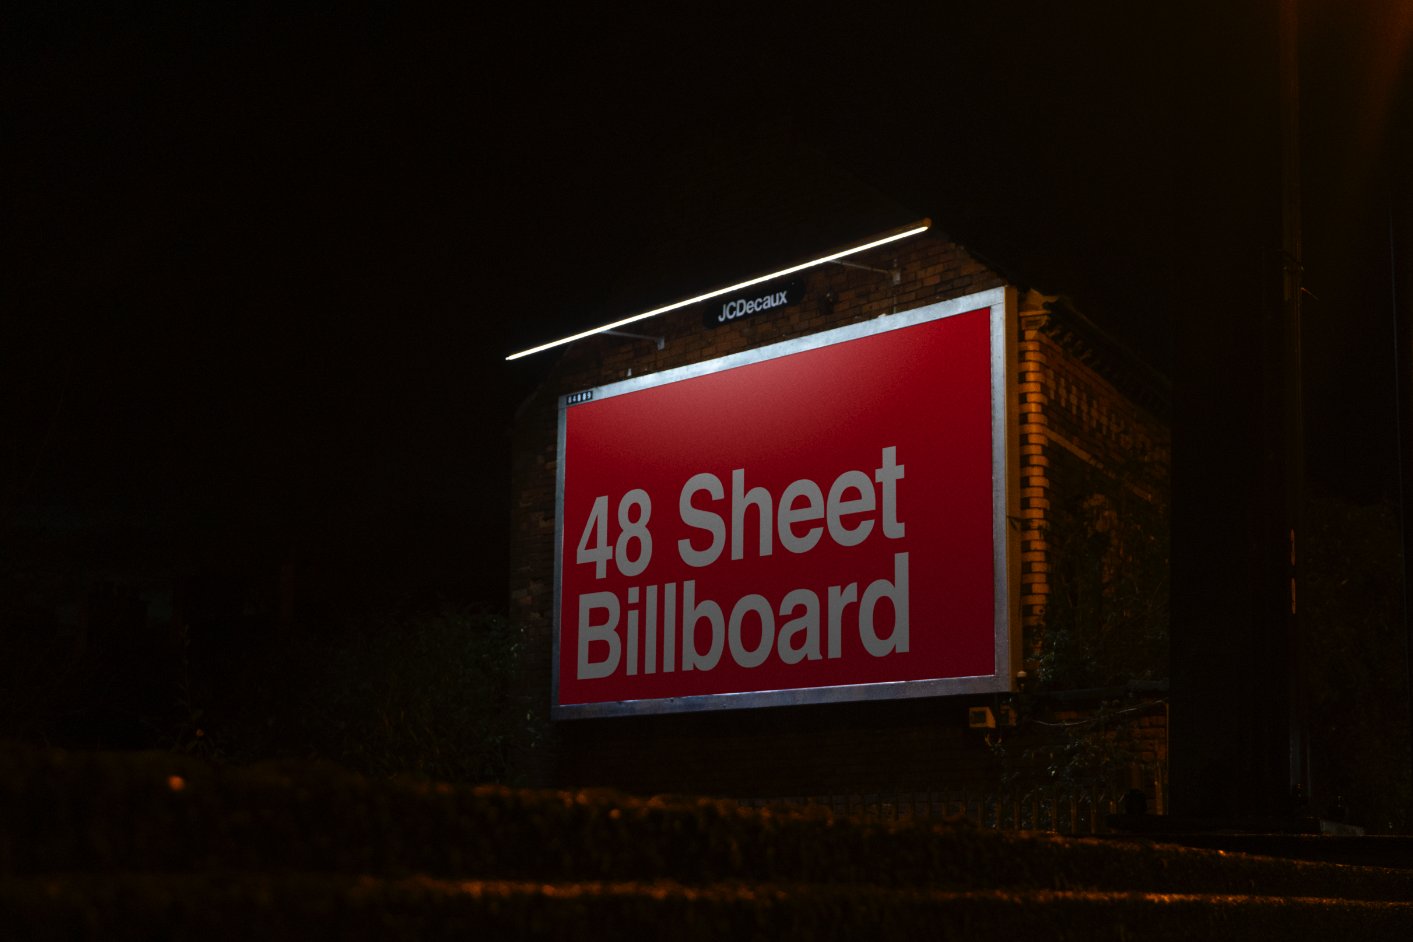 48 Sheet Billboard Mock Up - Belfast cover image.